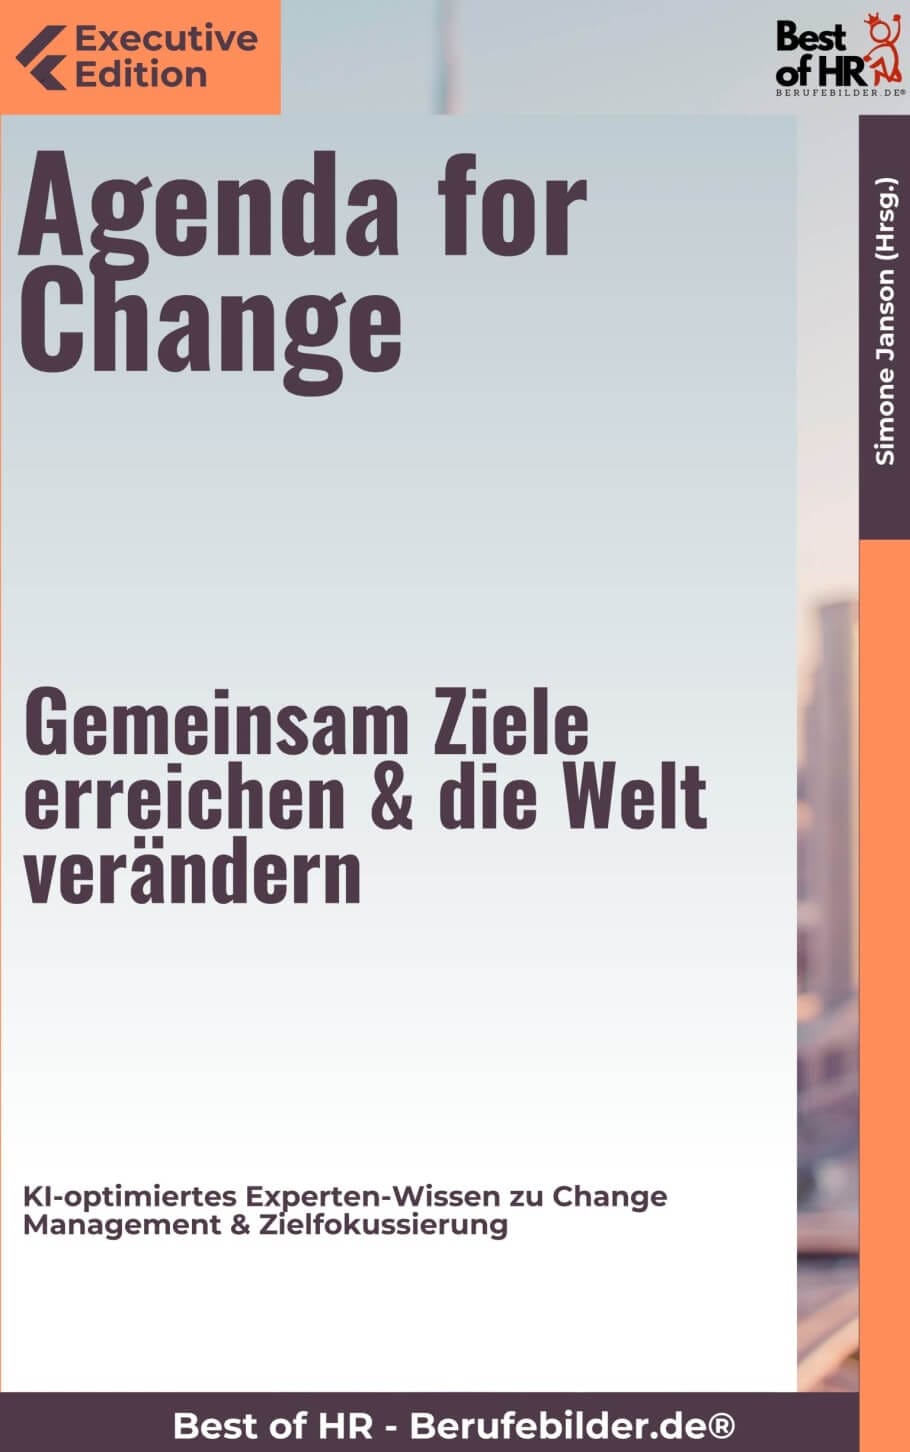 Agenda for Change – Gemeinsam Ziele erreichen & die Welt verändern